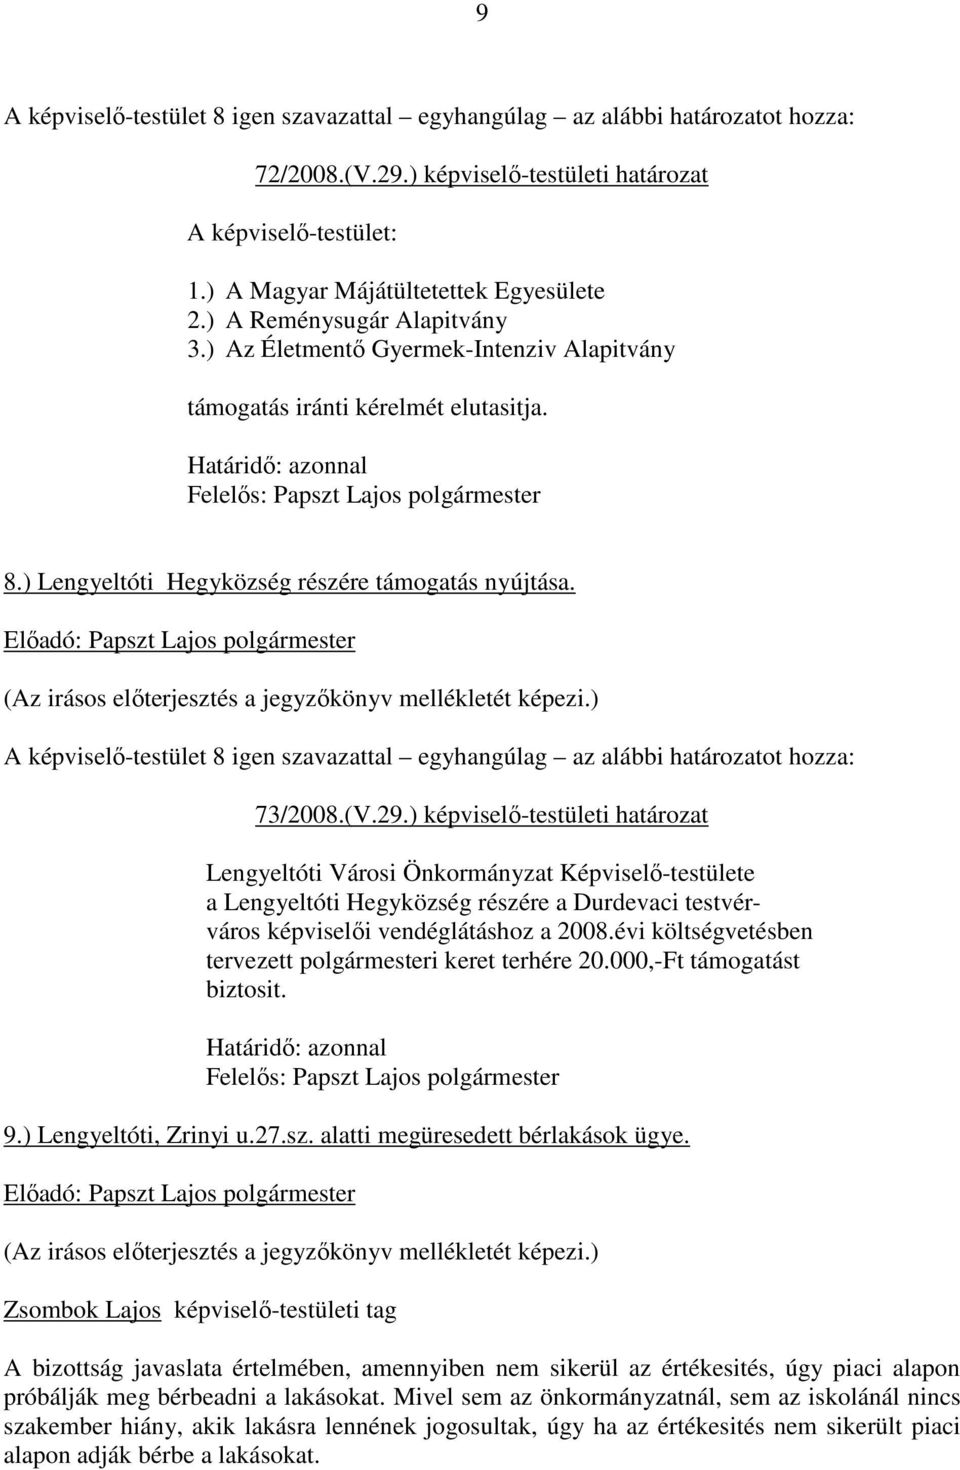 ) képviselı-testületi határozat Lengyeltóti Városi Önkormányzat Képviselı-testülete a Lengyeltóti Hegyközség részére a Durdevaci testvérváros képviselıi vendéglátáshoz a 2008.